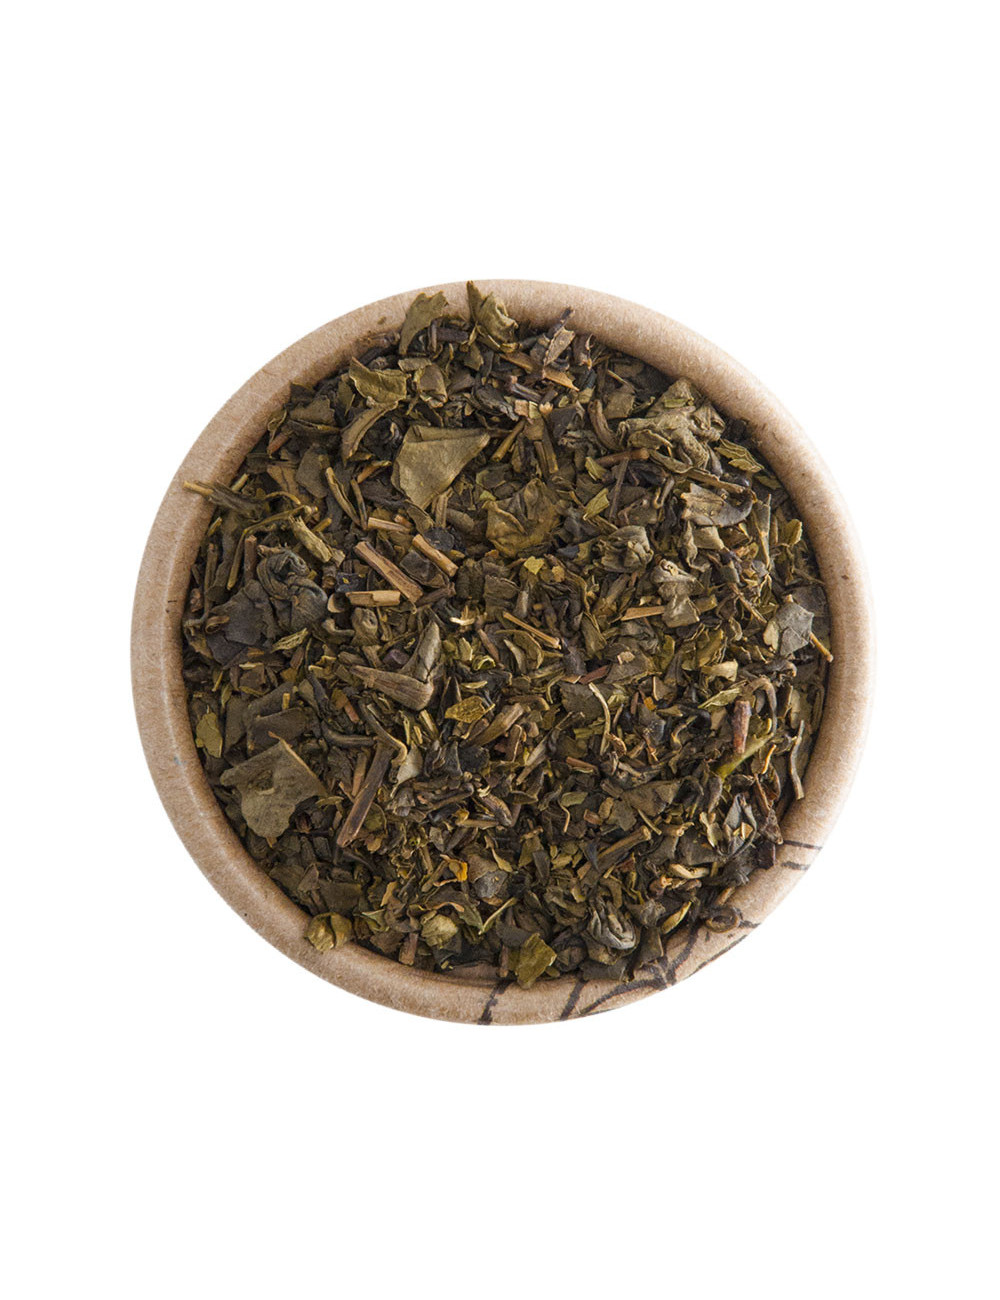 “Tuareg” alla Menta tè verde aromatizzato - La Pianta del Tè shop online